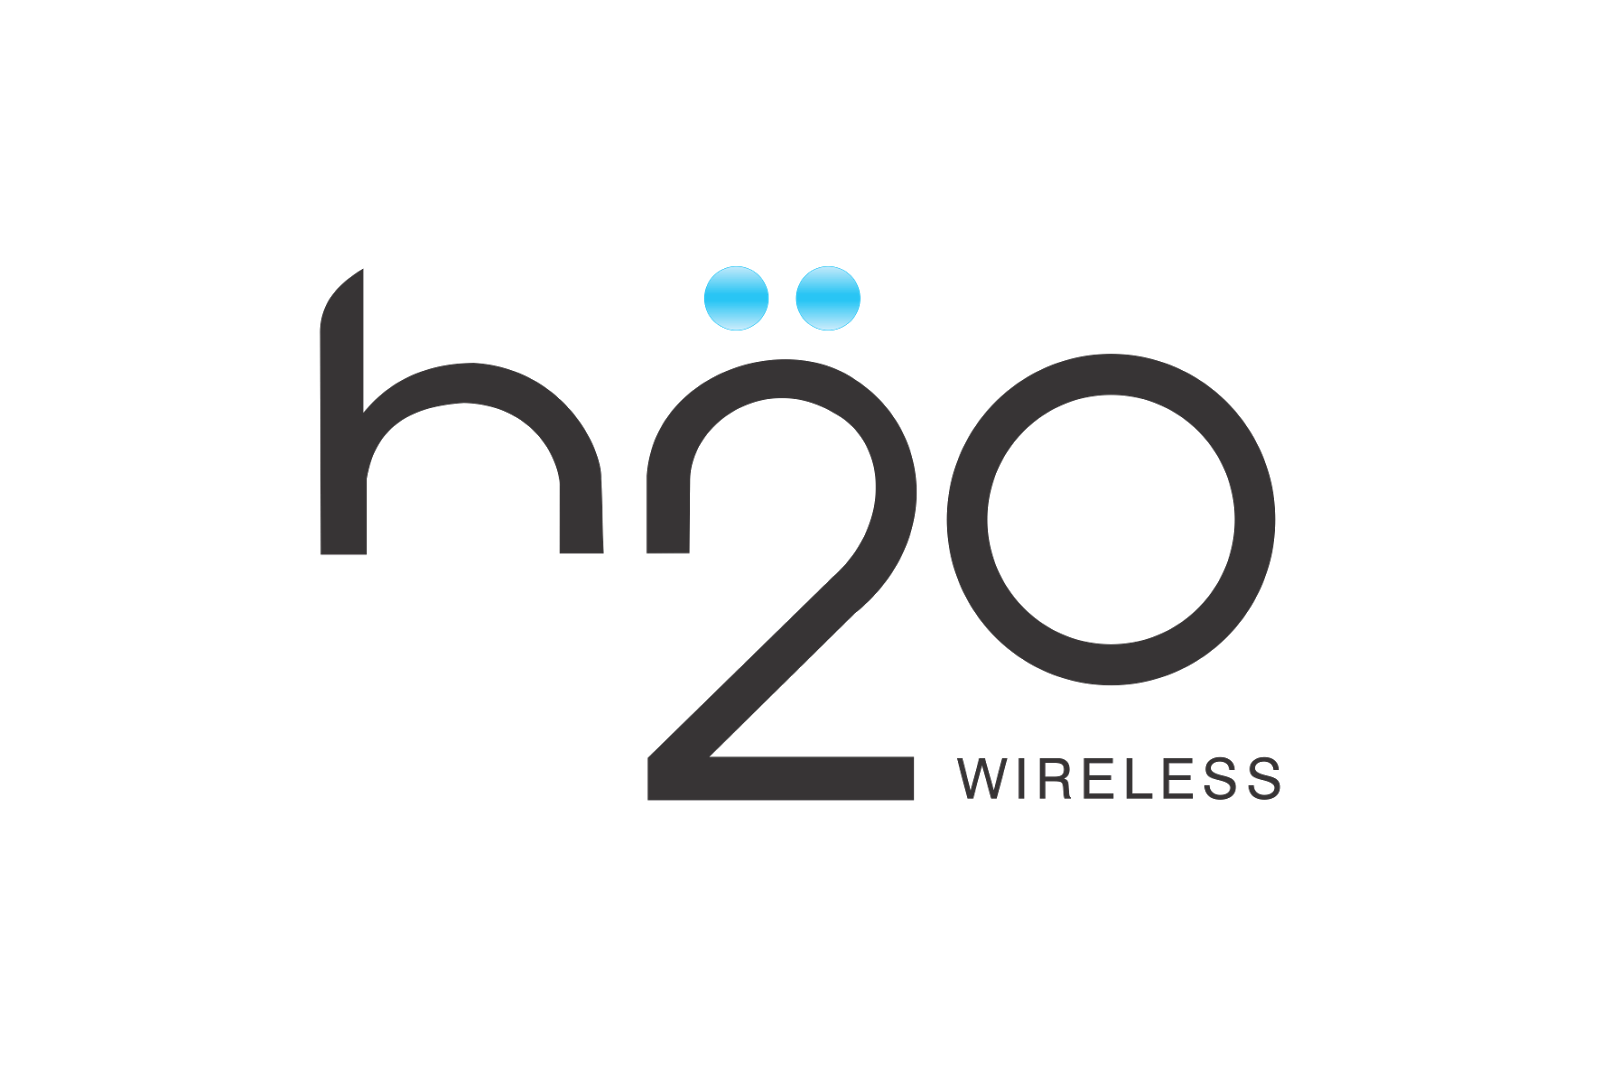 Nio h2o. H2o Wireless. Логотип o2. H2o2. H2o бренд одежды.